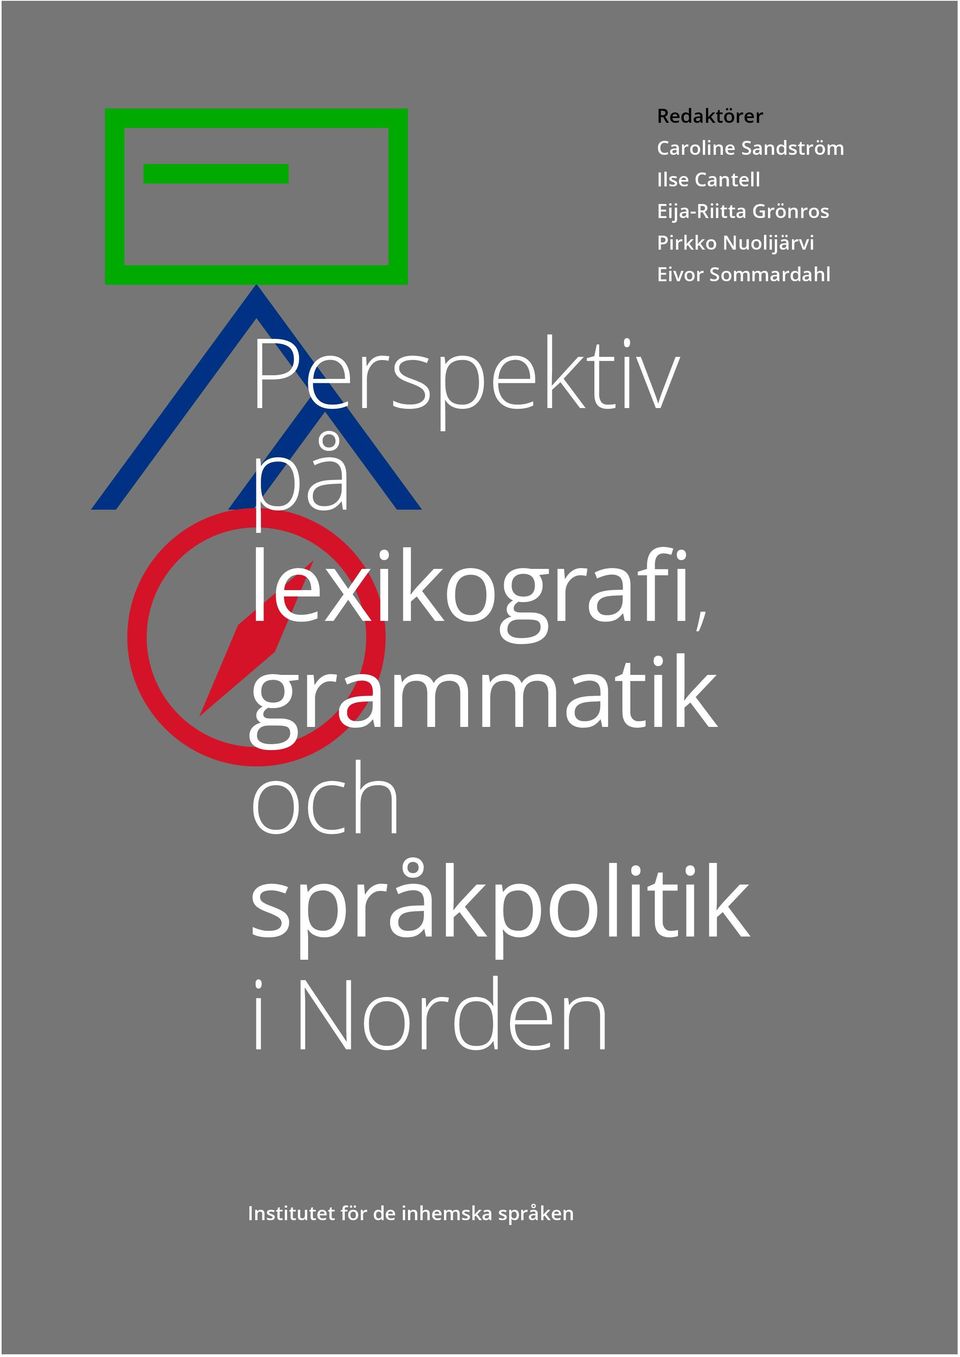 Sommardahl Perspektiv på lexikografi, grammatik